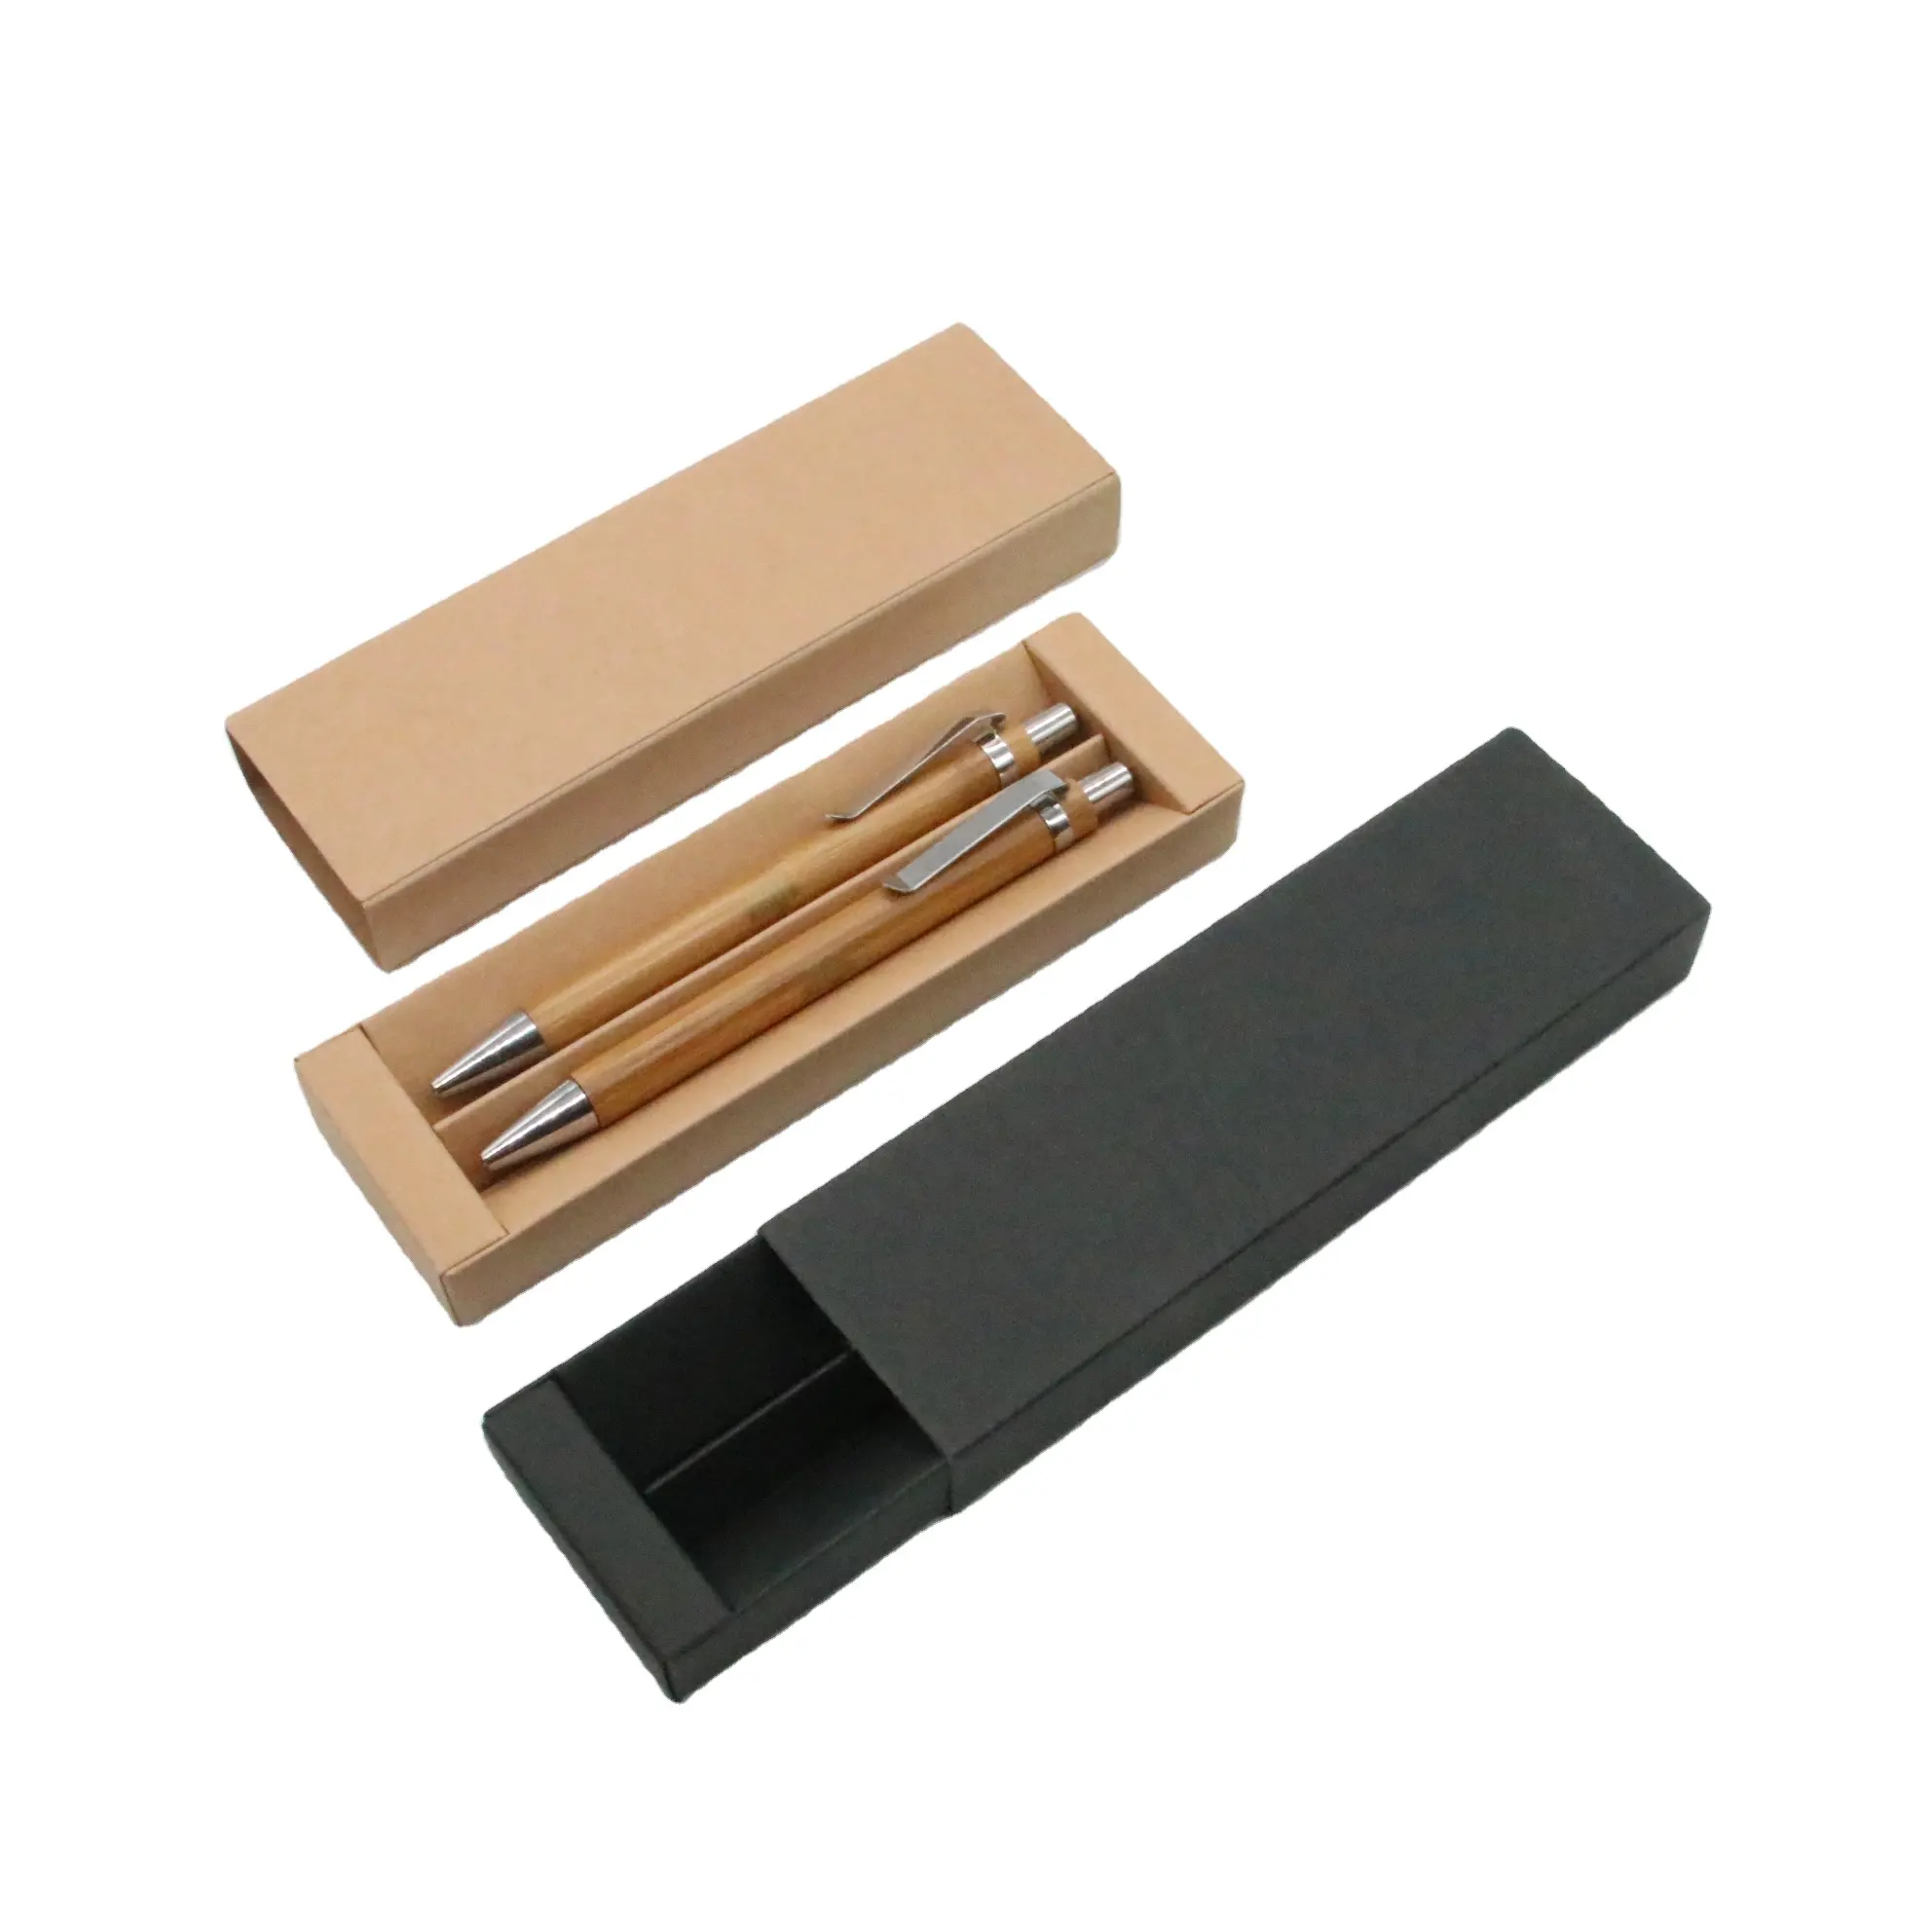 Promozionale 2 pezzo di bambù penna con la scatola di carta eco penna set